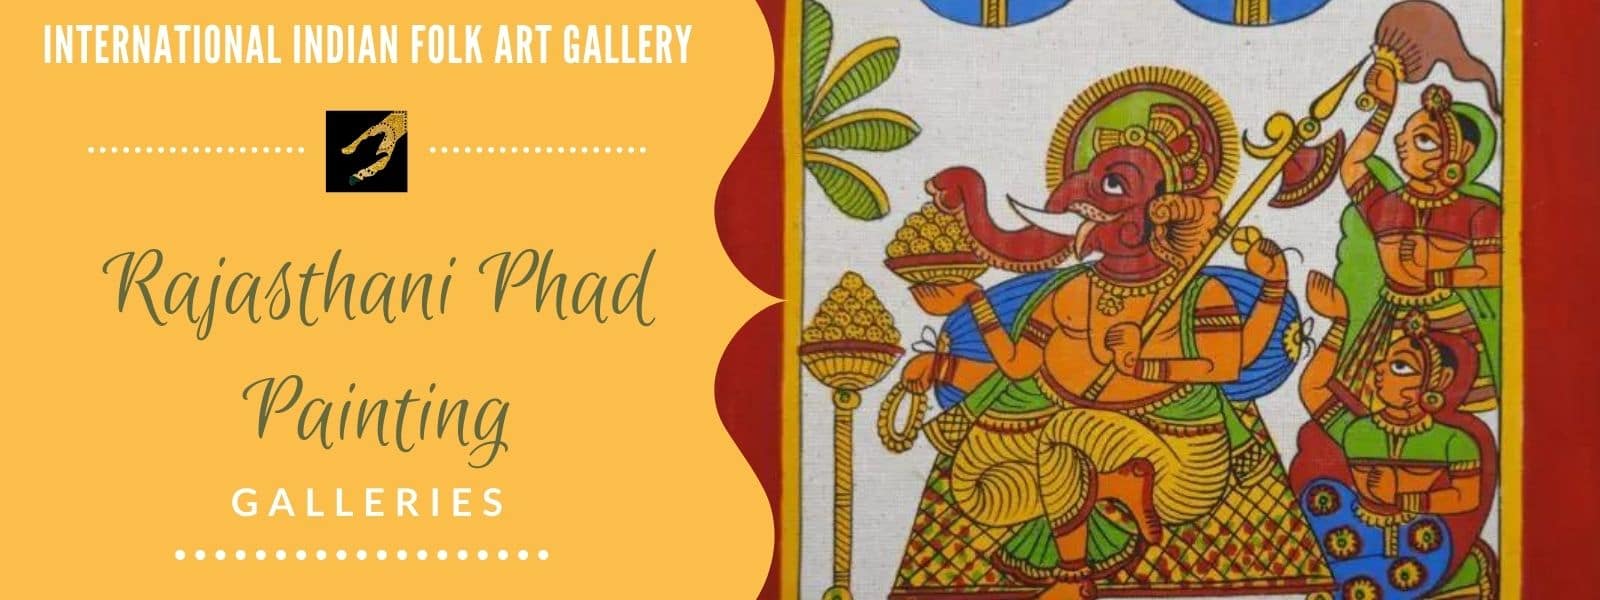 Rajasthani Phad Painting IIFAG Gallery Image